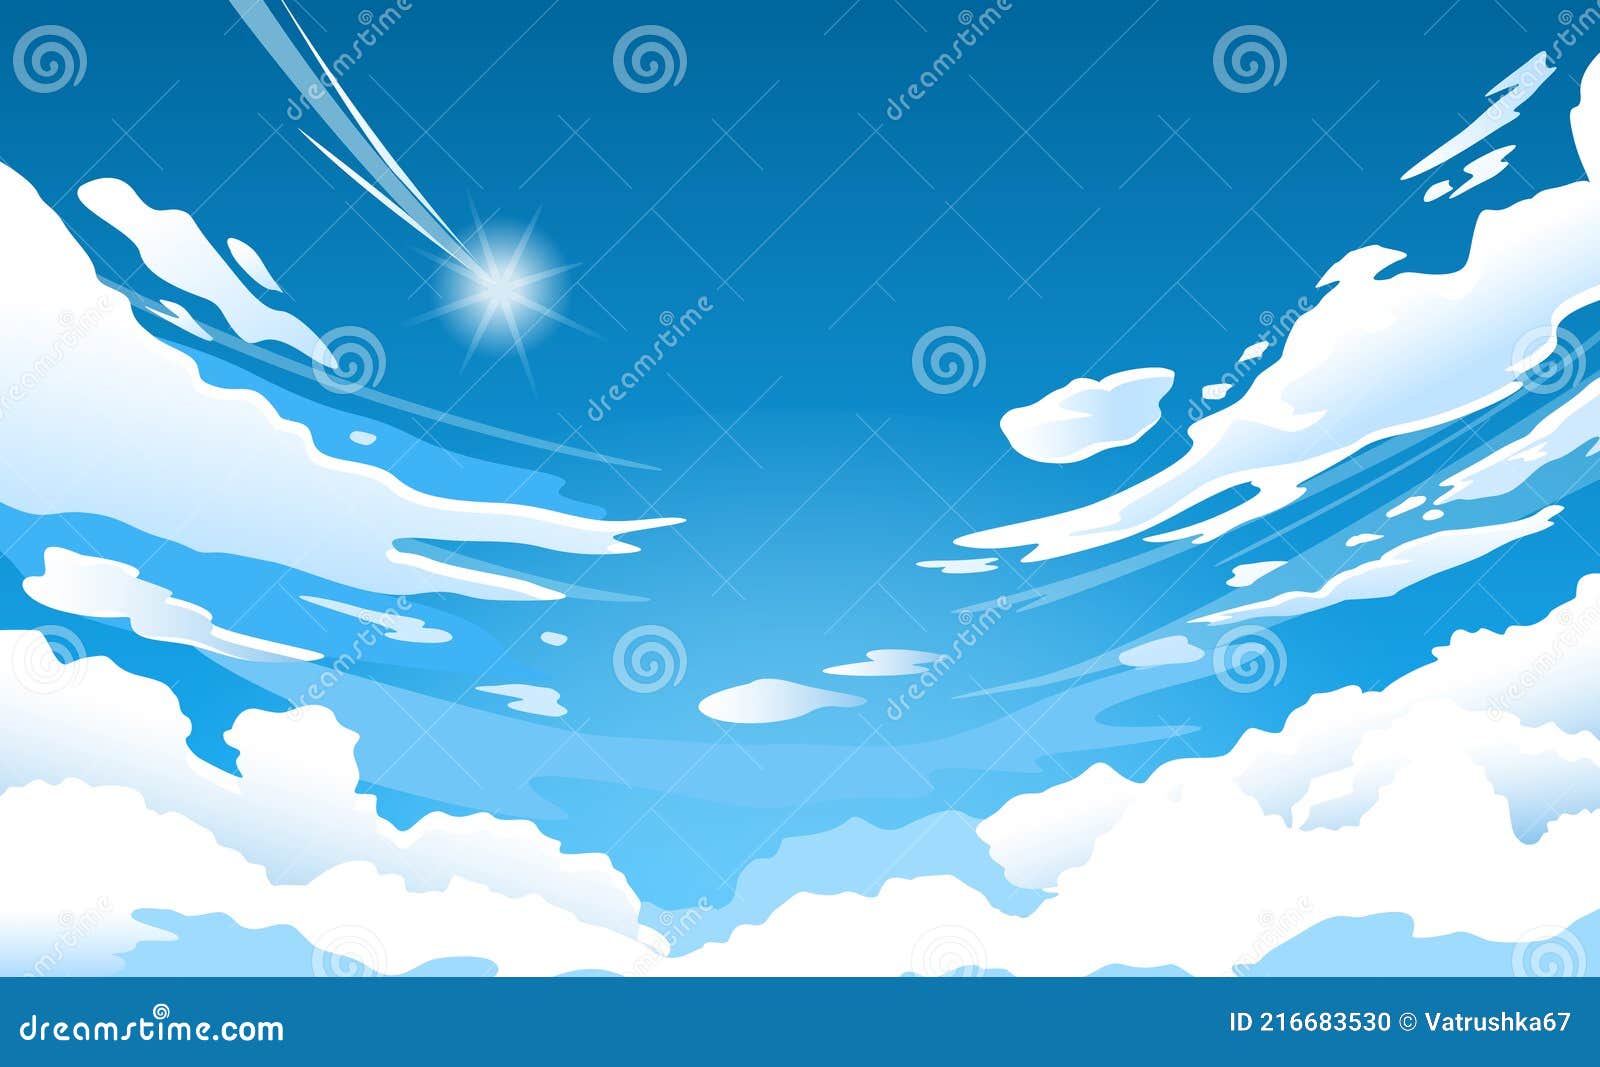 Mây (Những đám mây): Nếu bạn yêu thích sự phóng đại của thiên nhiên, những đám mây trôi nổi nhanh chóng trên bầu trời chắc chắn sẽ làm bạn say đắm. Những bức ảnh này sẽ đưa bạn đến những chuyến phiêu lưu trên các dãy núi, các bãi biển và các vùng đồng cỏ. Bạn chỉ cần click vào để xem.